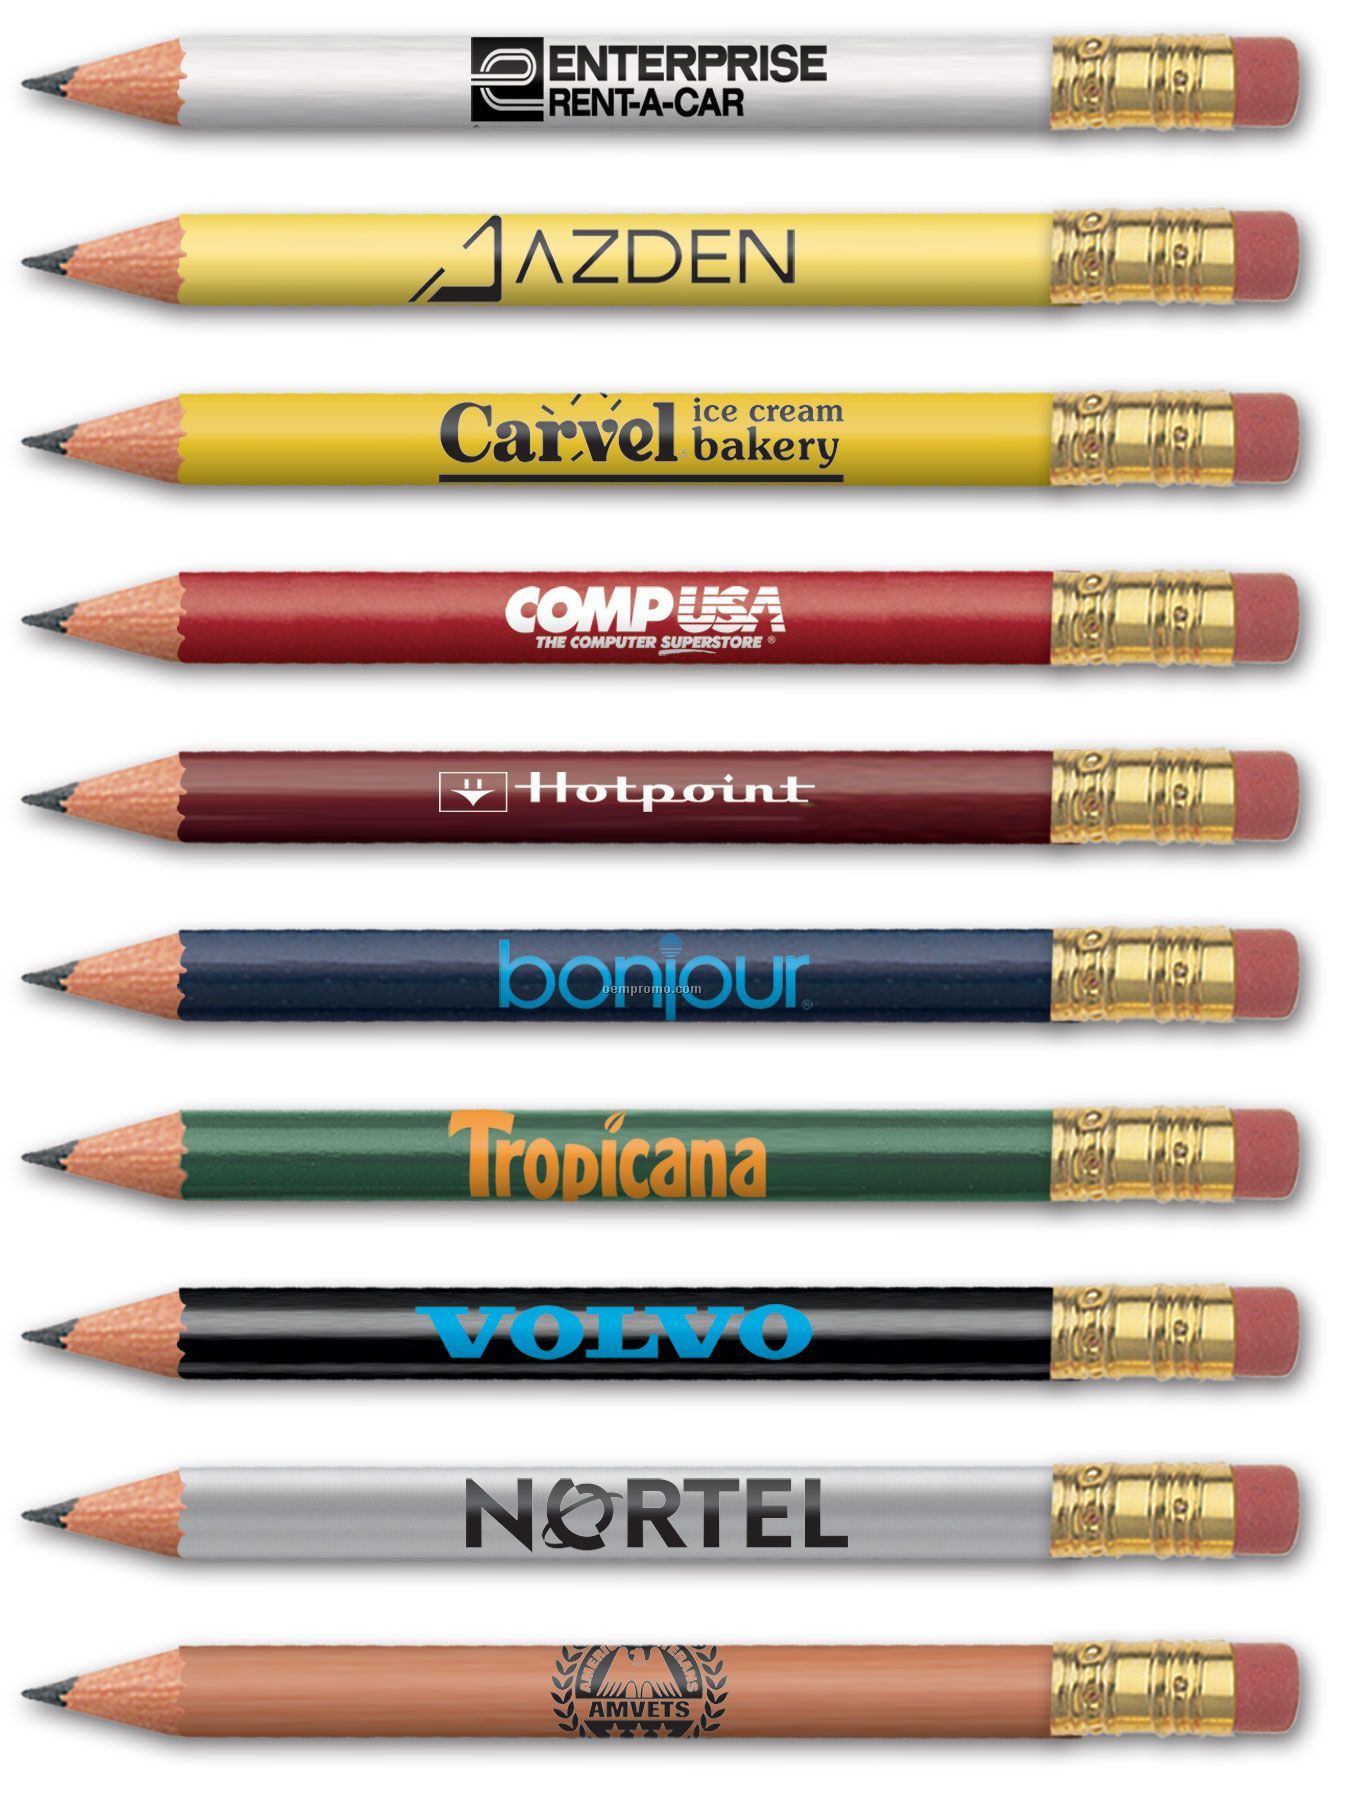 Round Golf Pencil With Eraser